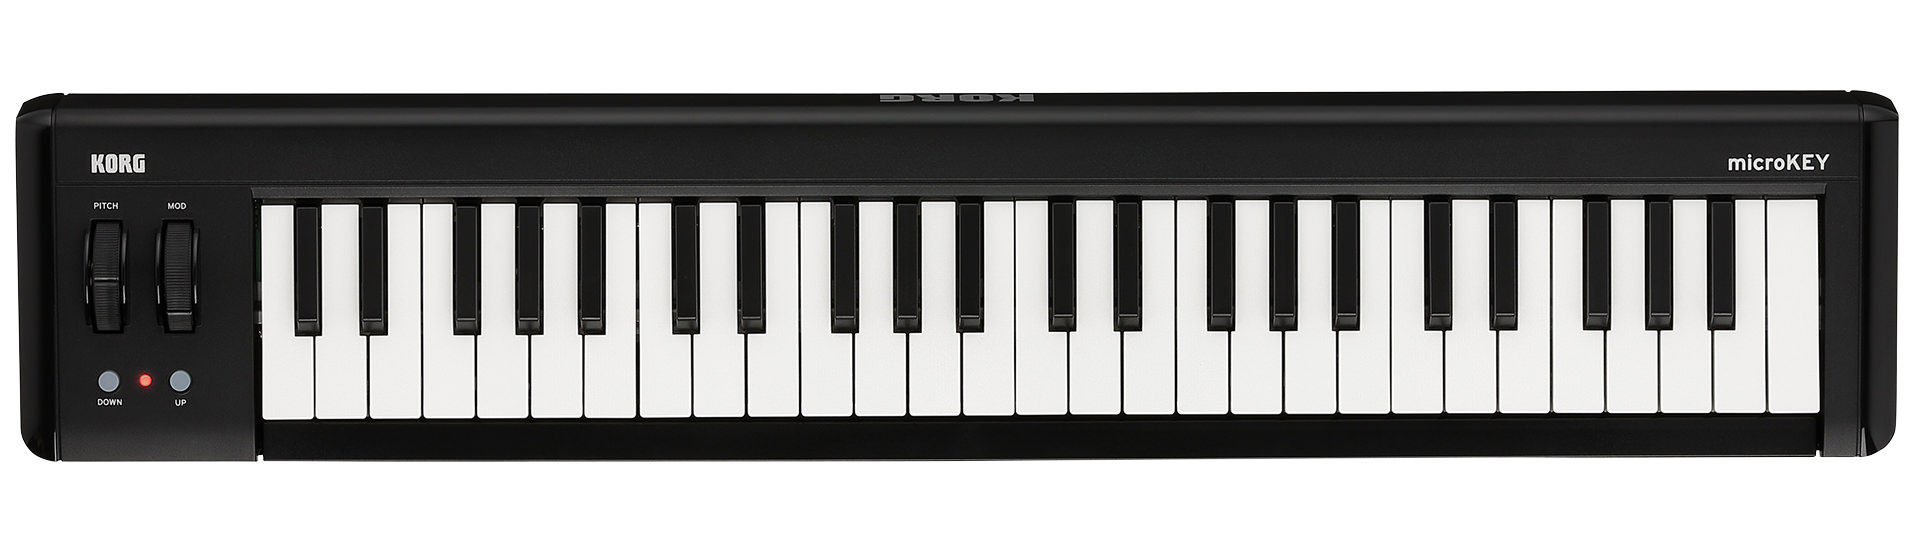 Korg Microkey2 49 MIDI Keyboard